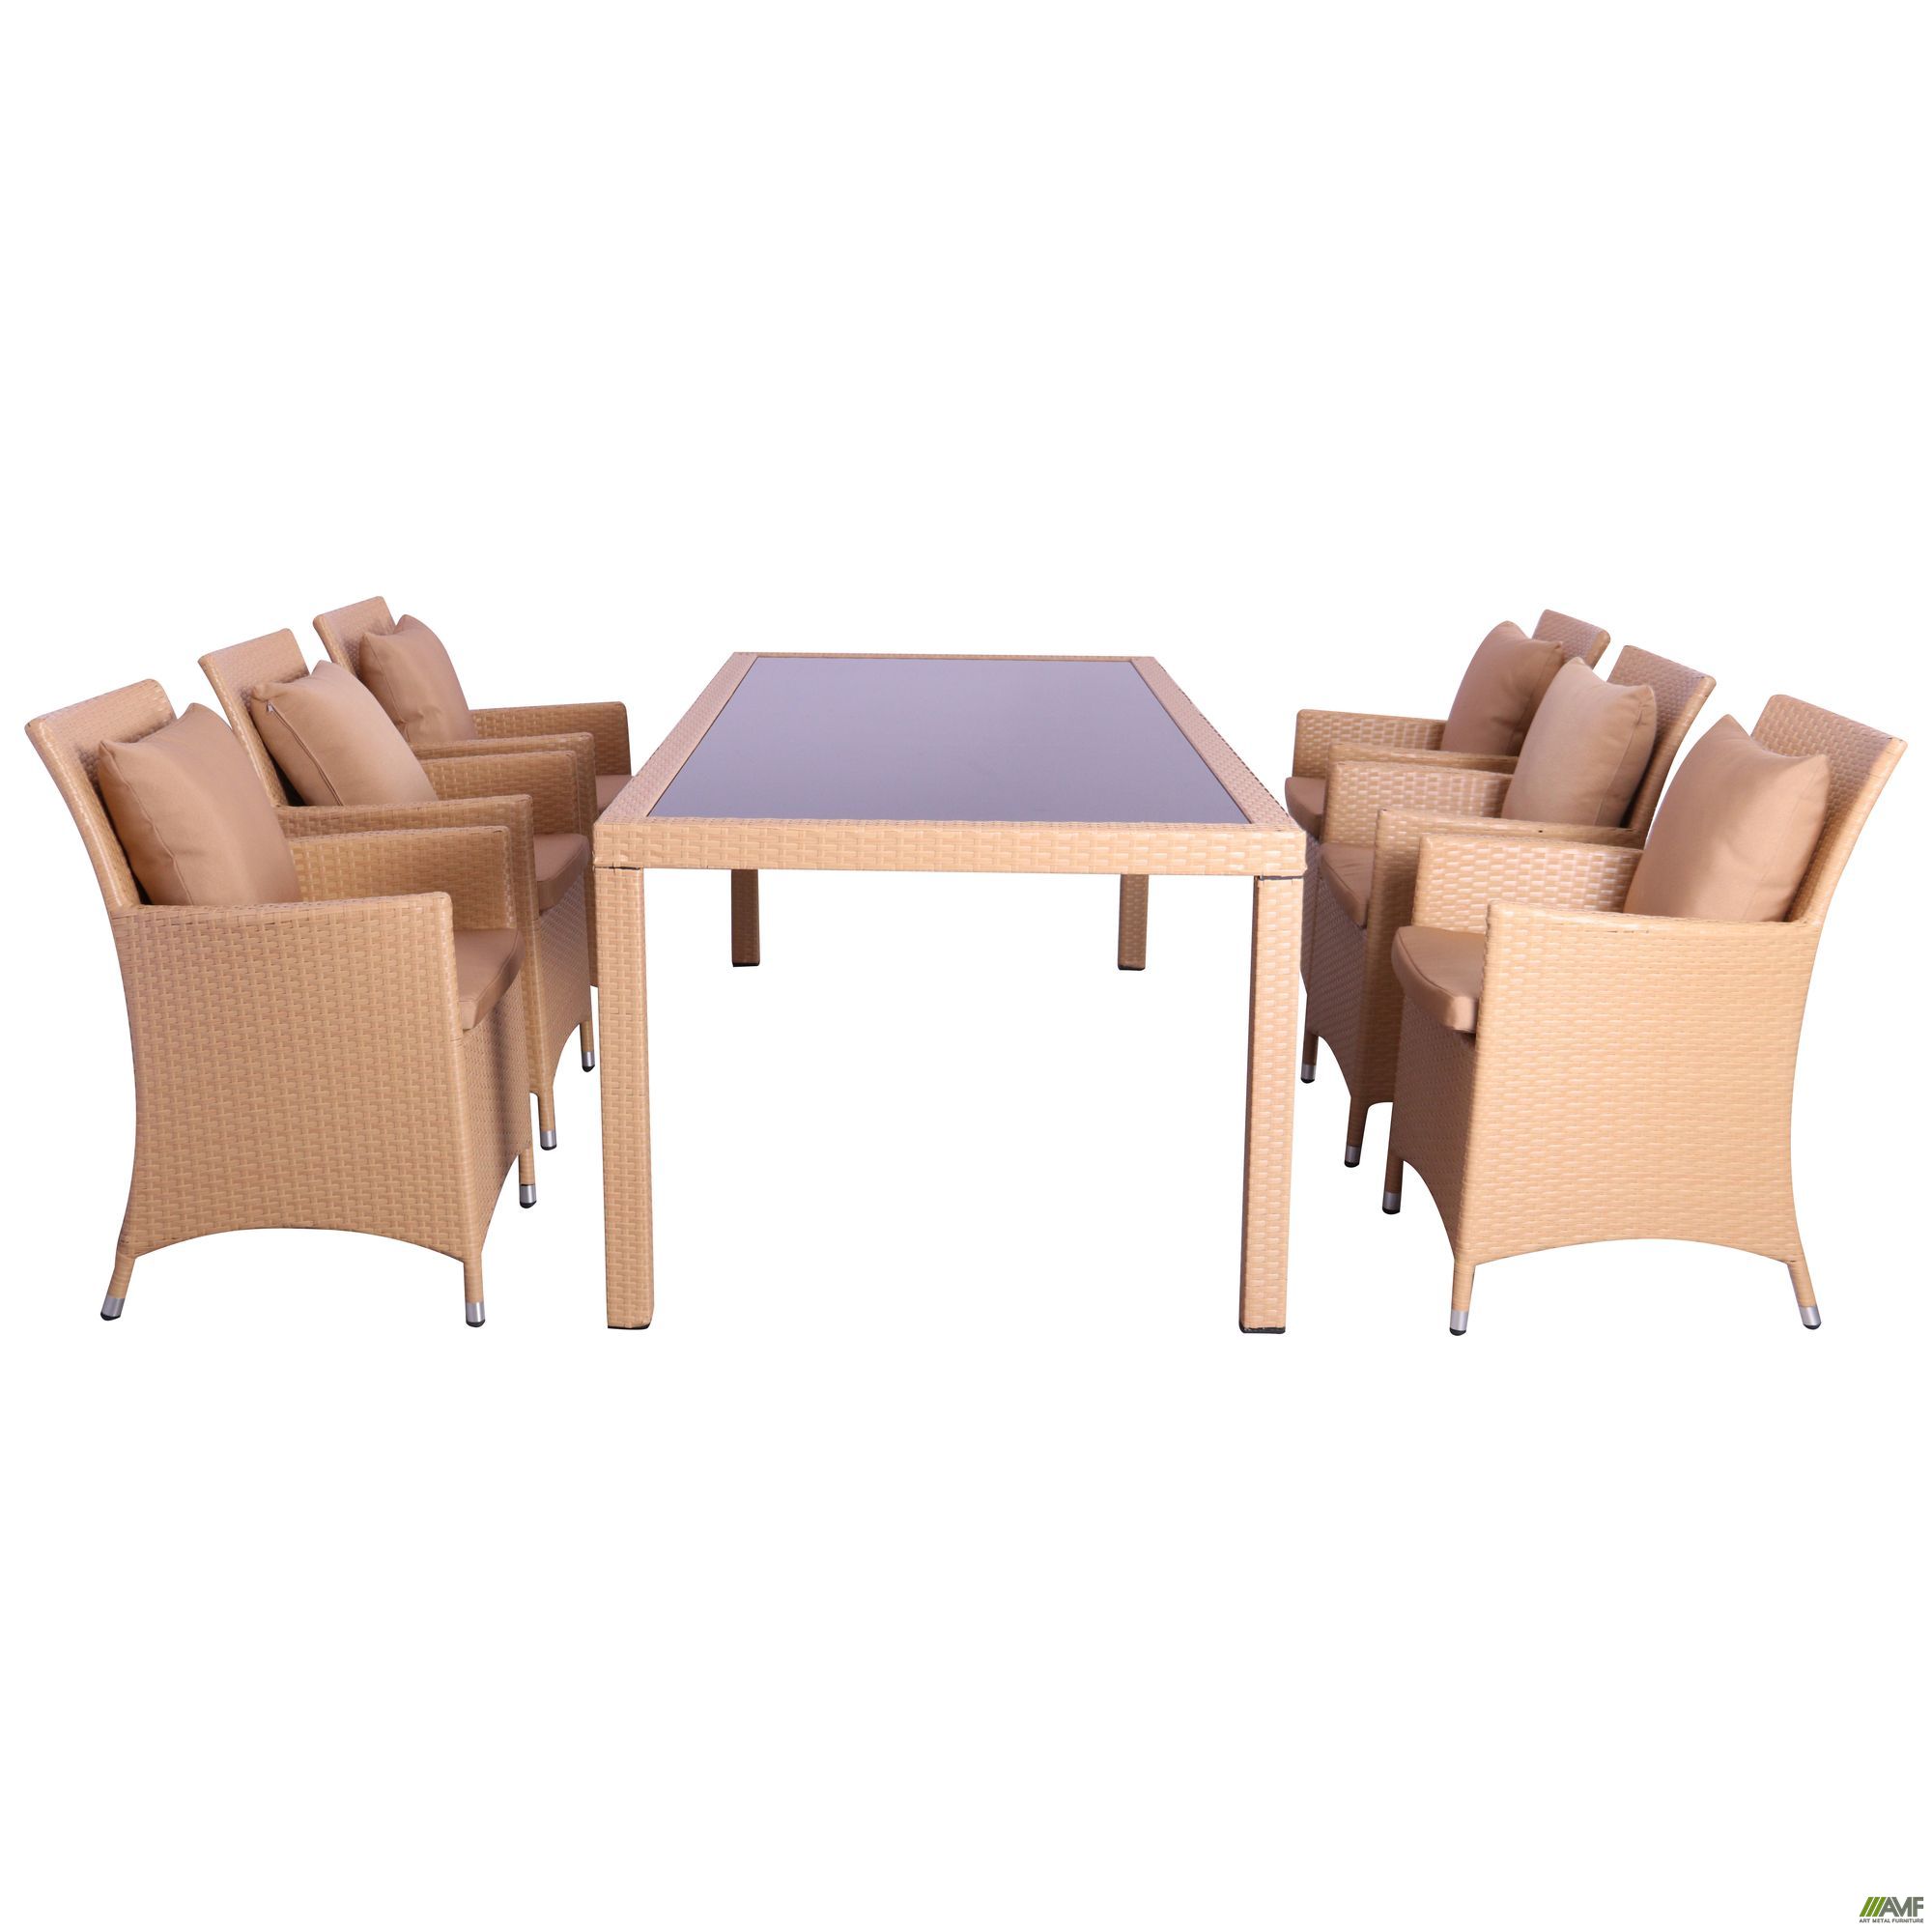 Фото 1 - Комплект мебели Samana-6 из ротанга Elit (SC-8849) Sand AM3041 ткань A14203 